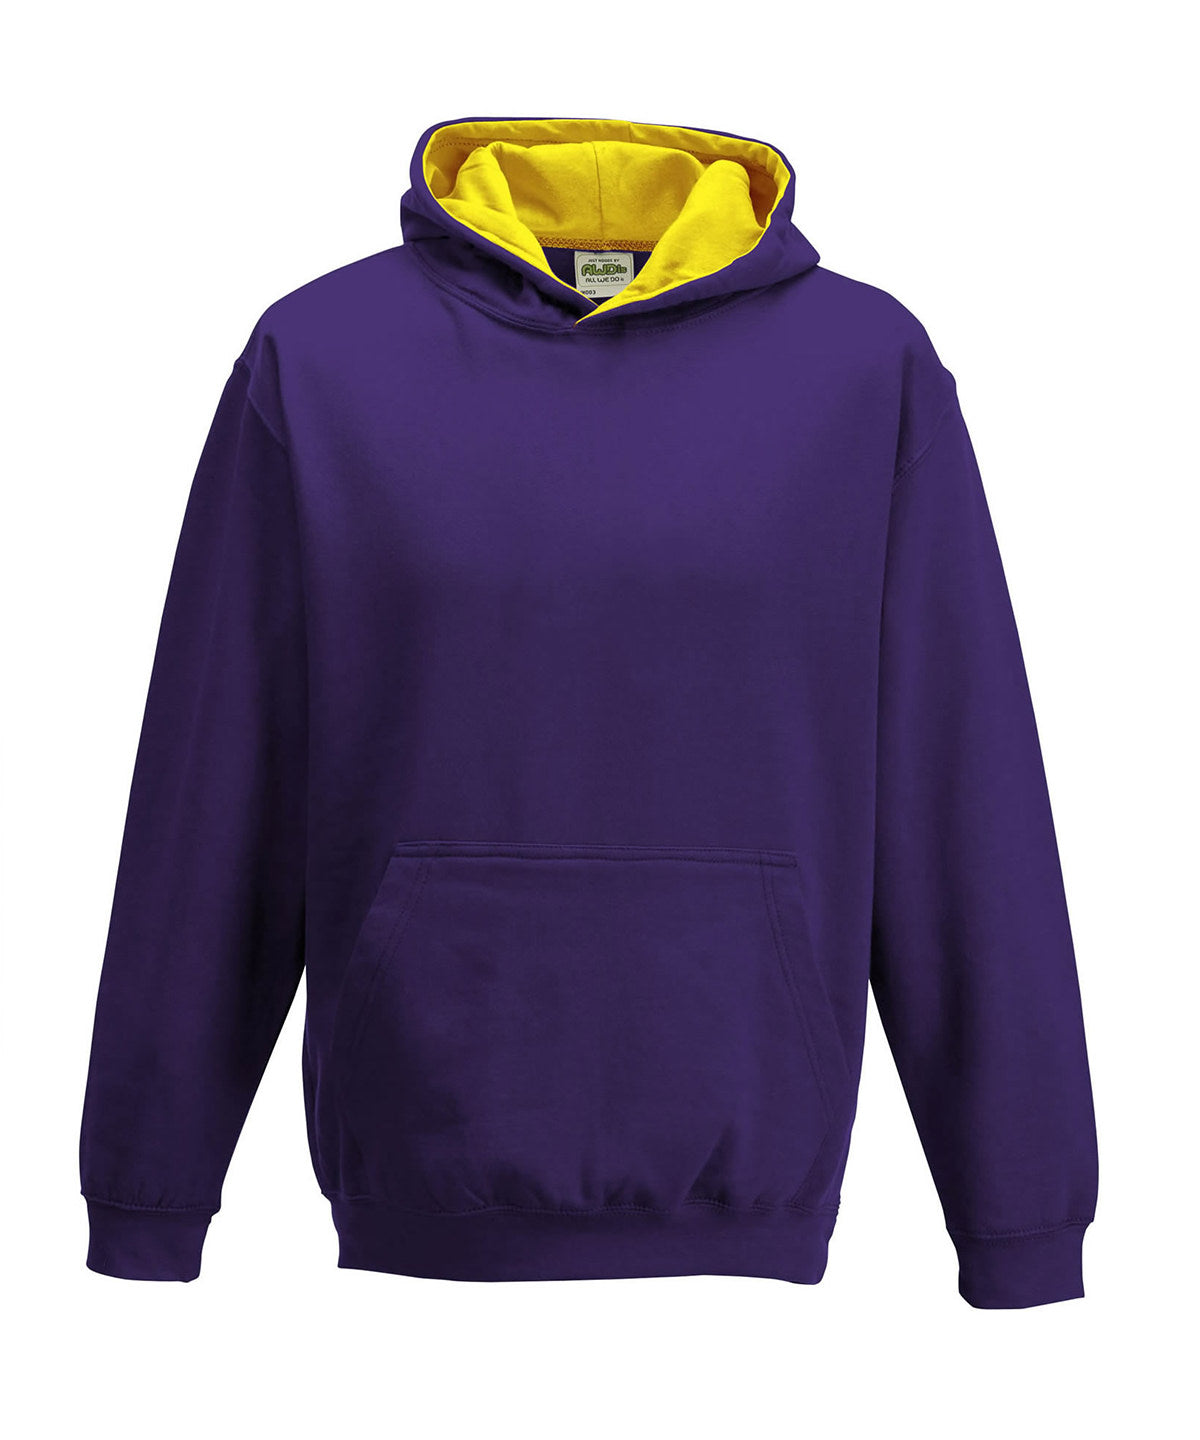 Personalised Hoodies - Mid Red AWDis Just Hoods Kids varsity hoodie